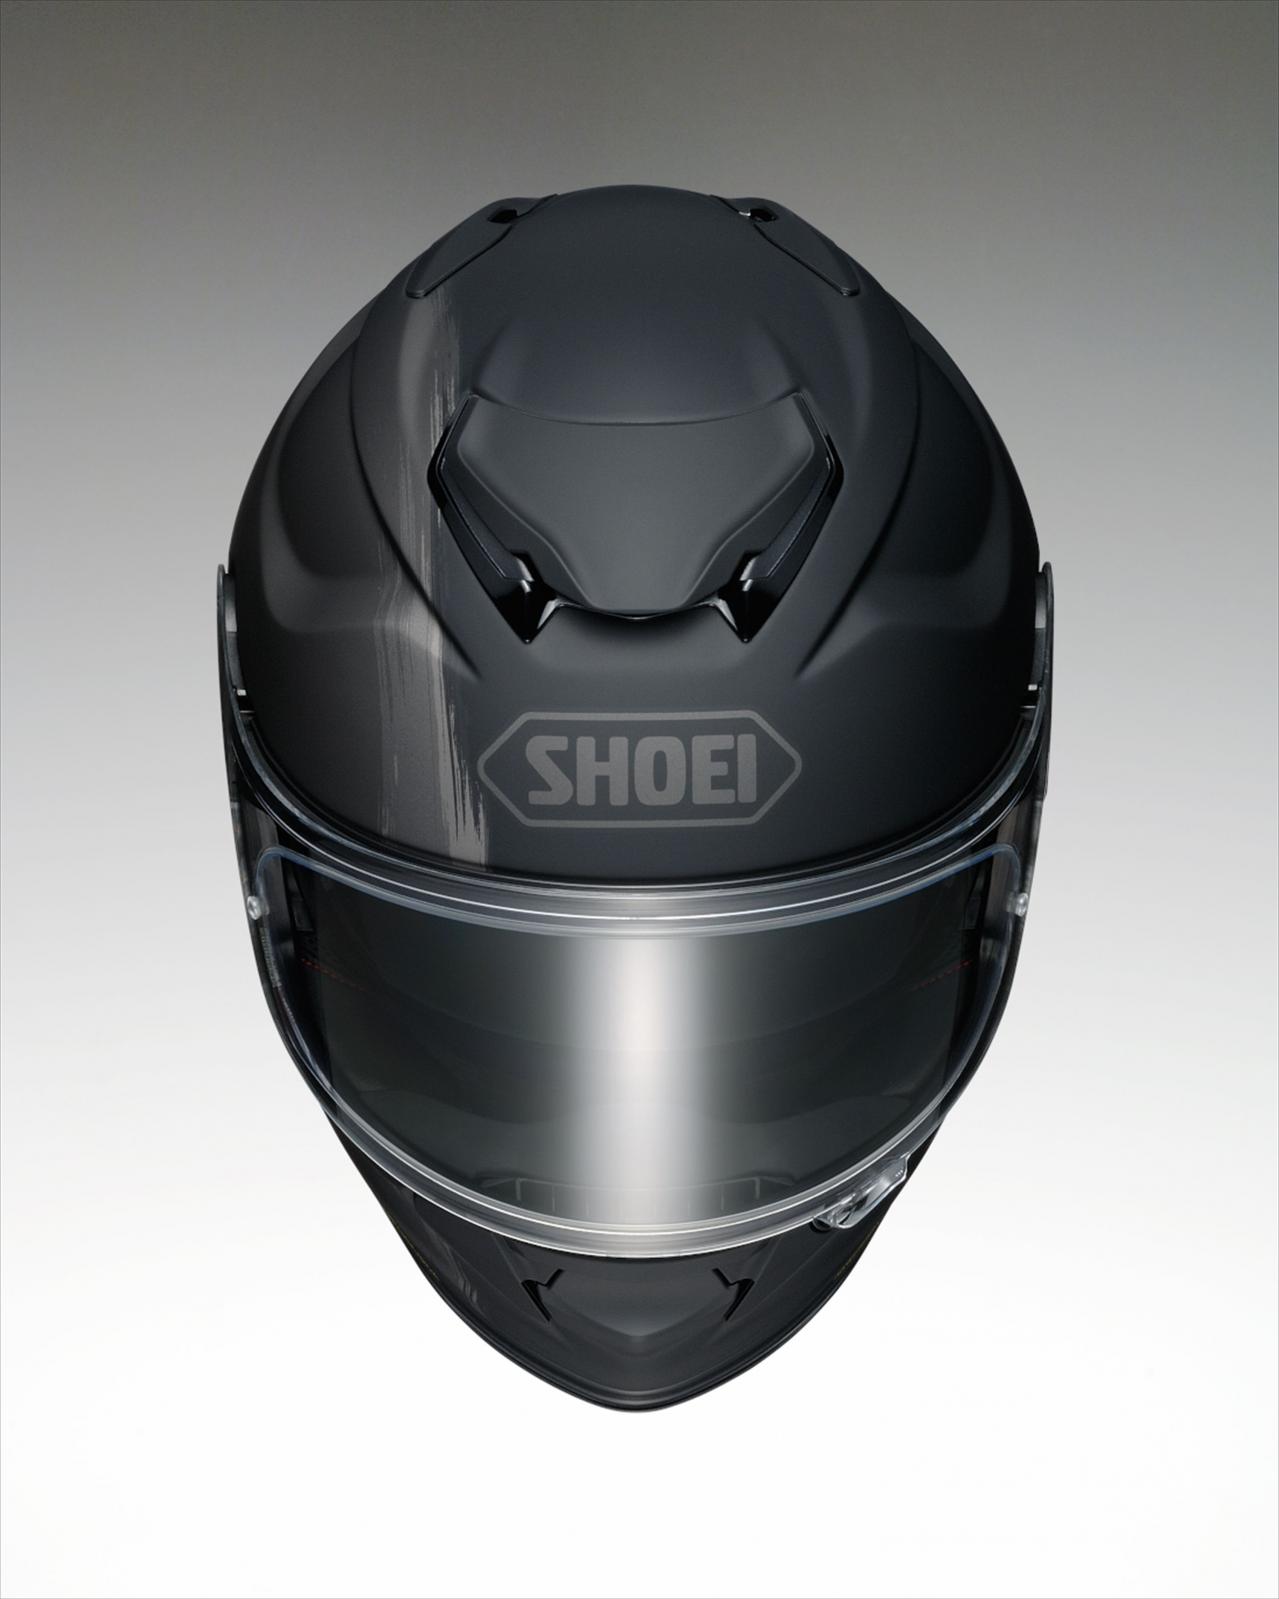 SHOEIのプレミアムツーリングフルフェイスヘルメット、GT-AirⅡに新柄 